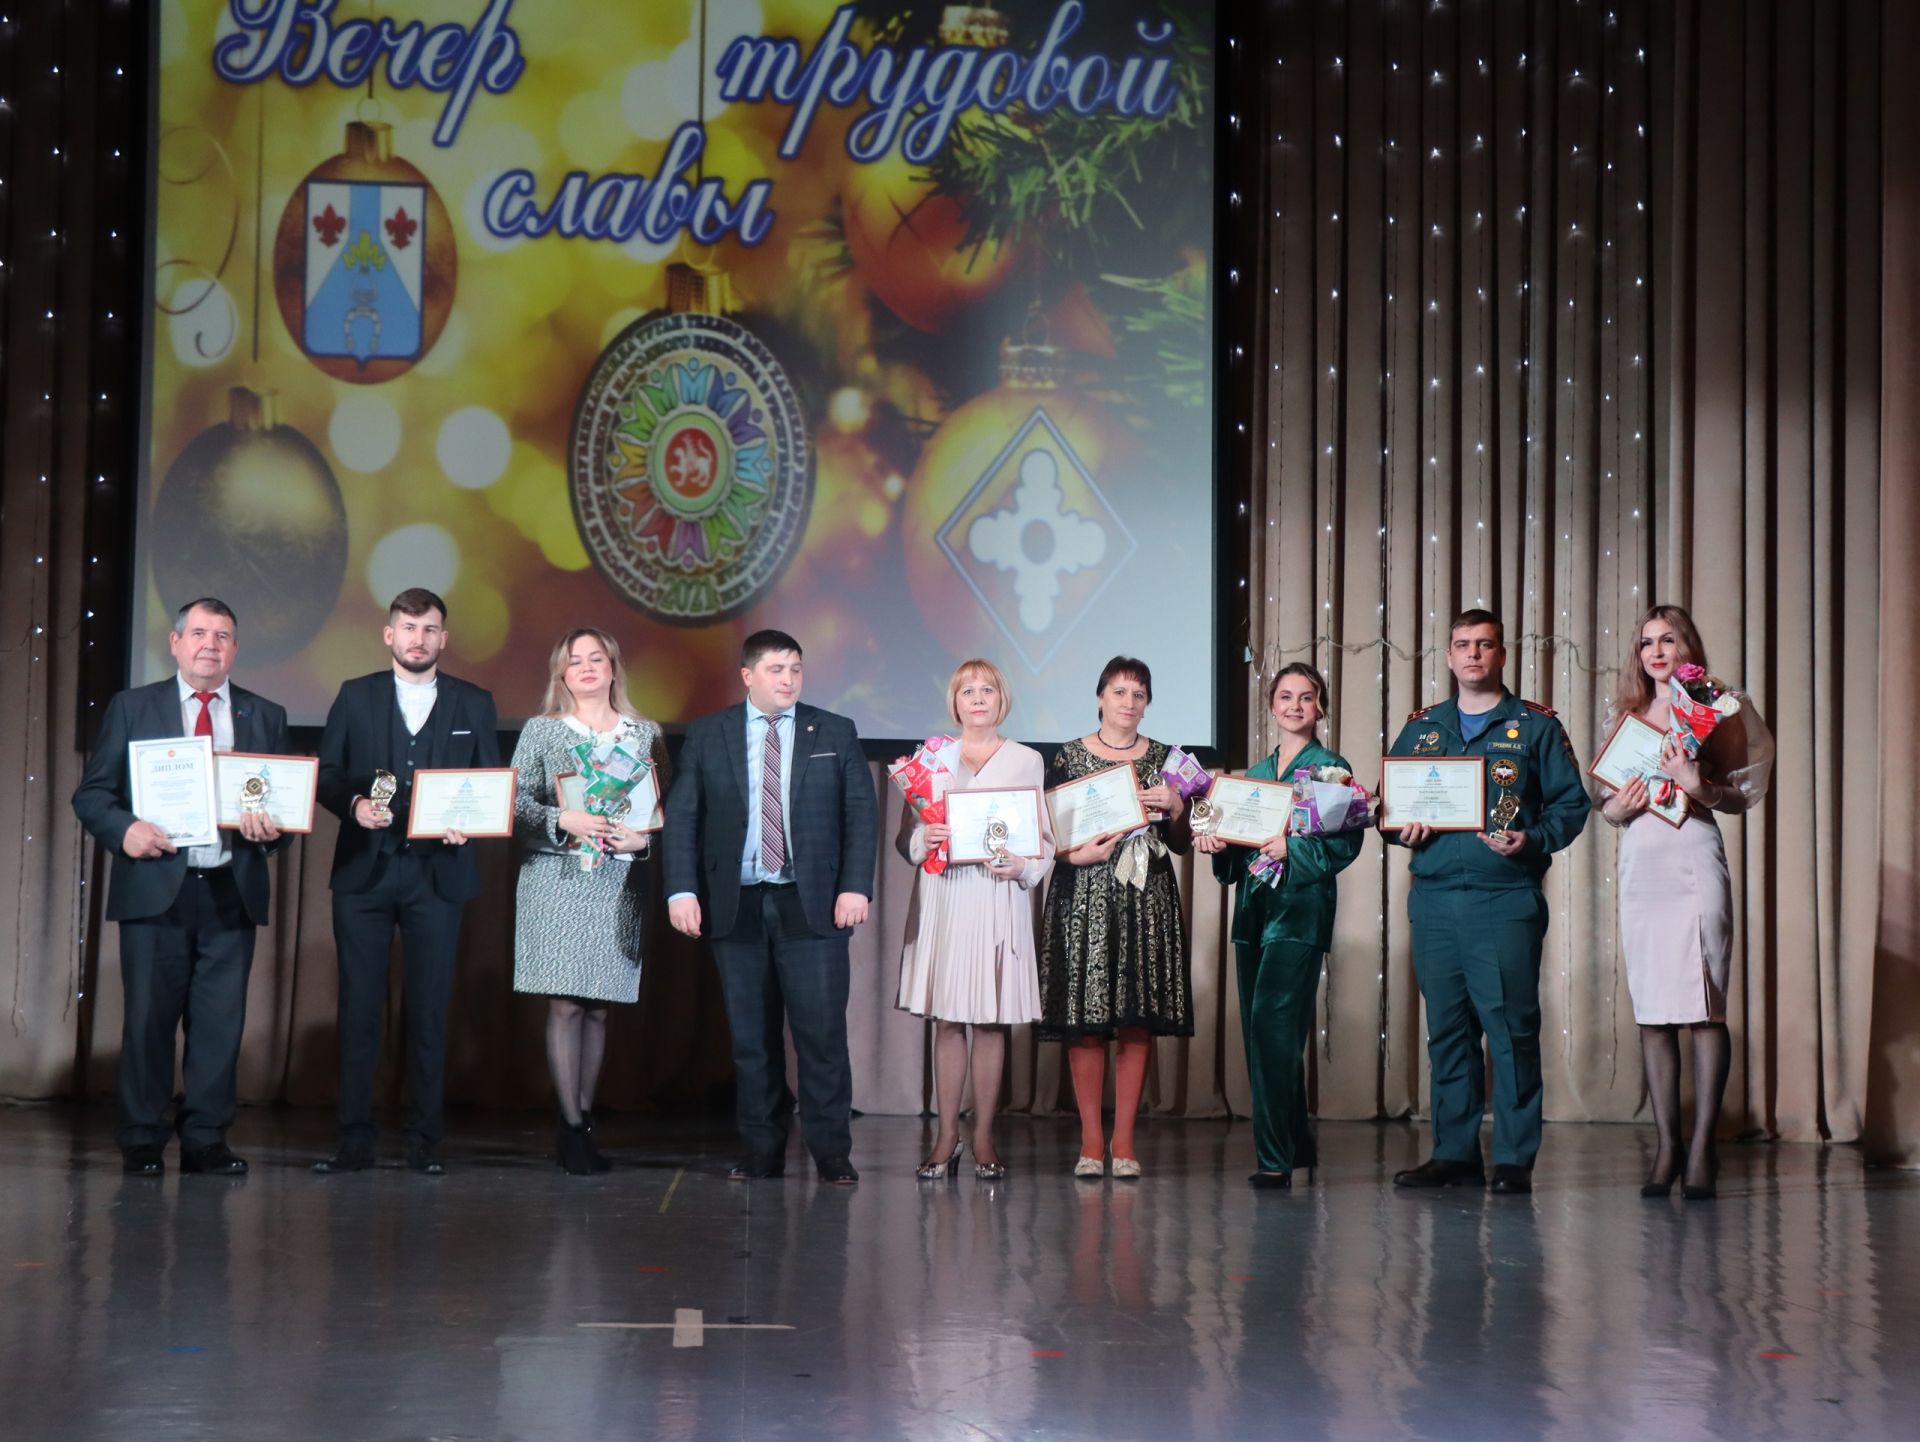 ТОП-5 ярких культурных событий в Менделеевском районе за 2021 год